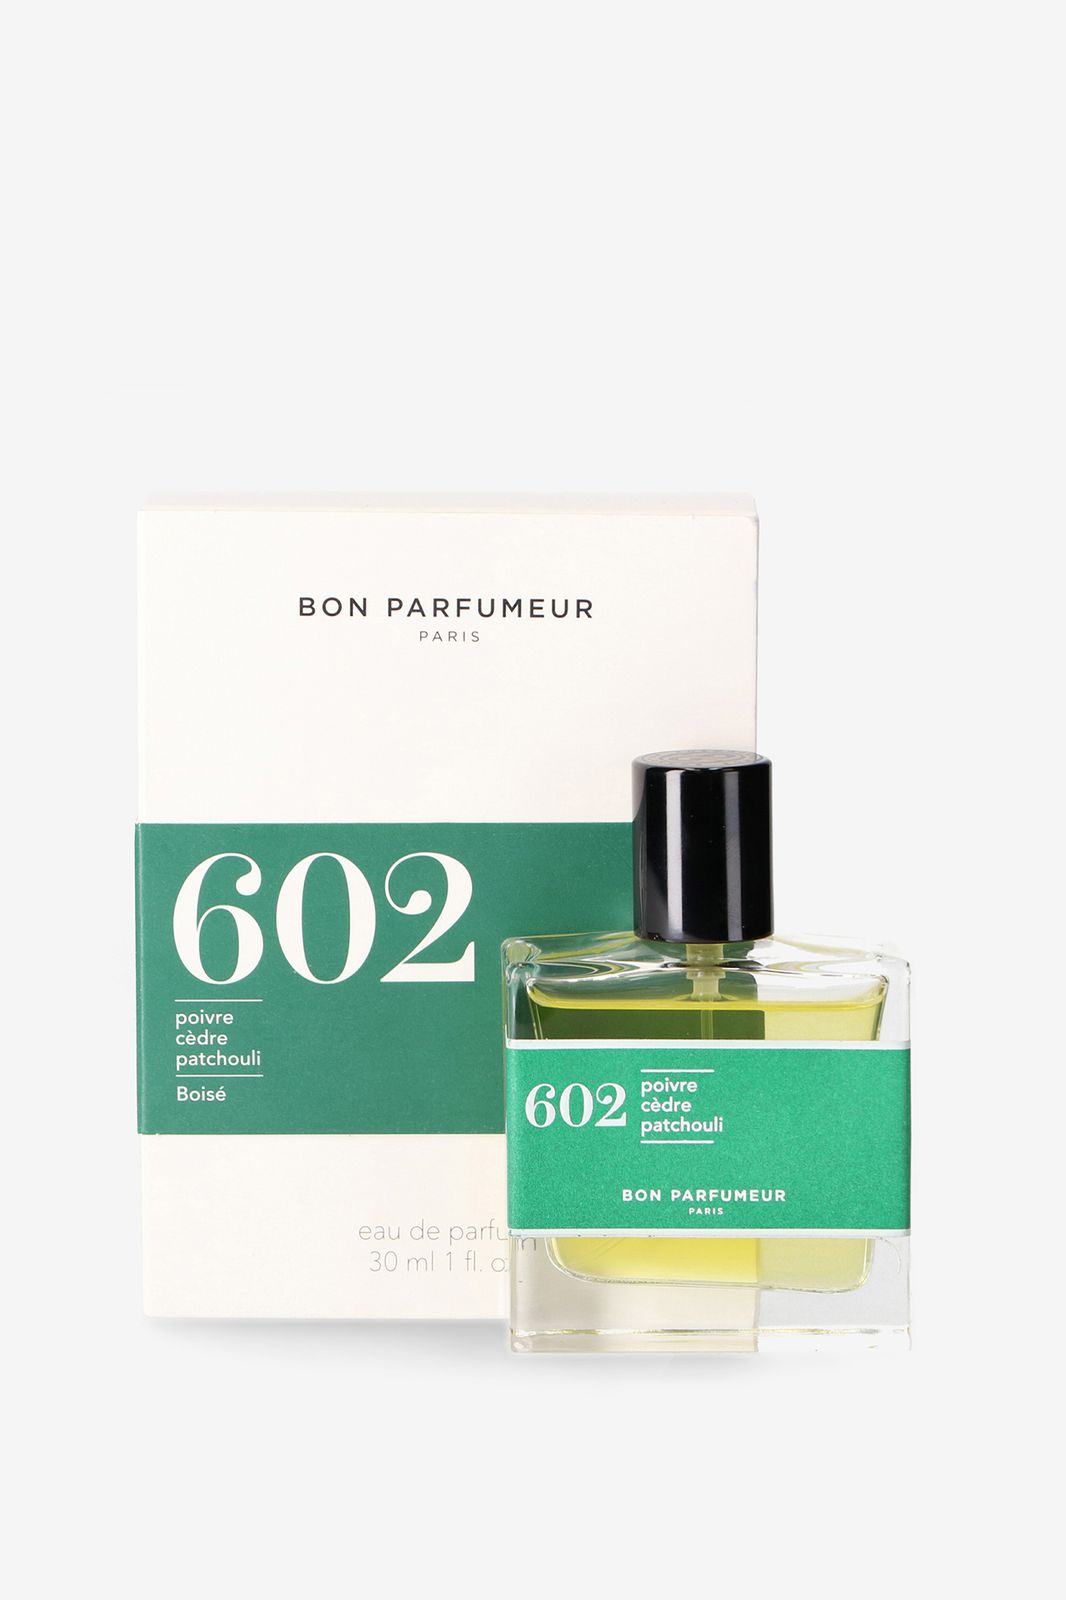 Bon parfumeur 602: pepper / cedar / patchouli - Homeland | Sissy-Boy